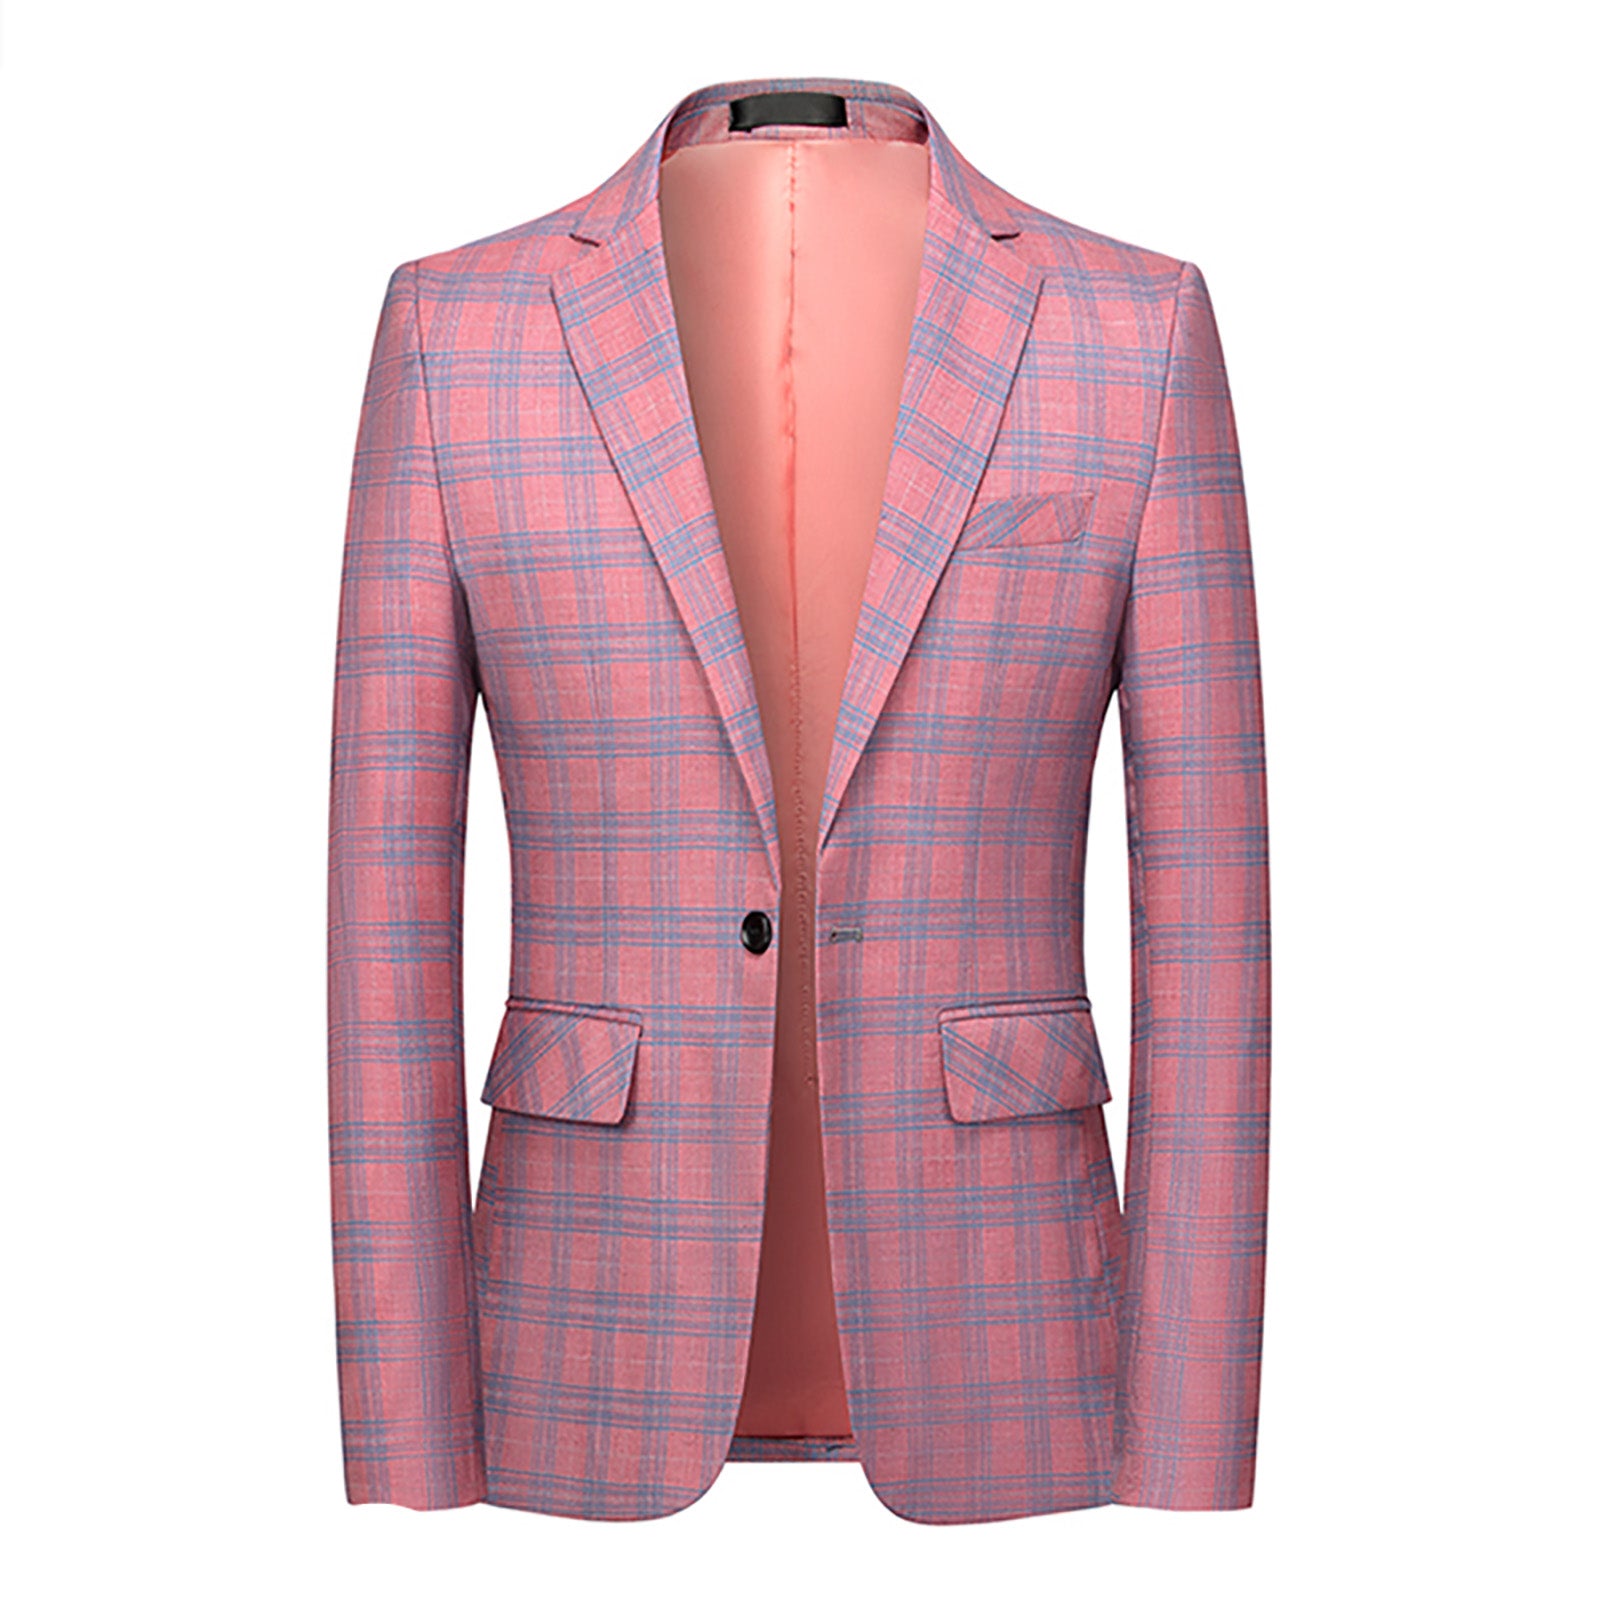 Men's Plaid Blazer in Blue Beige Pink Checked